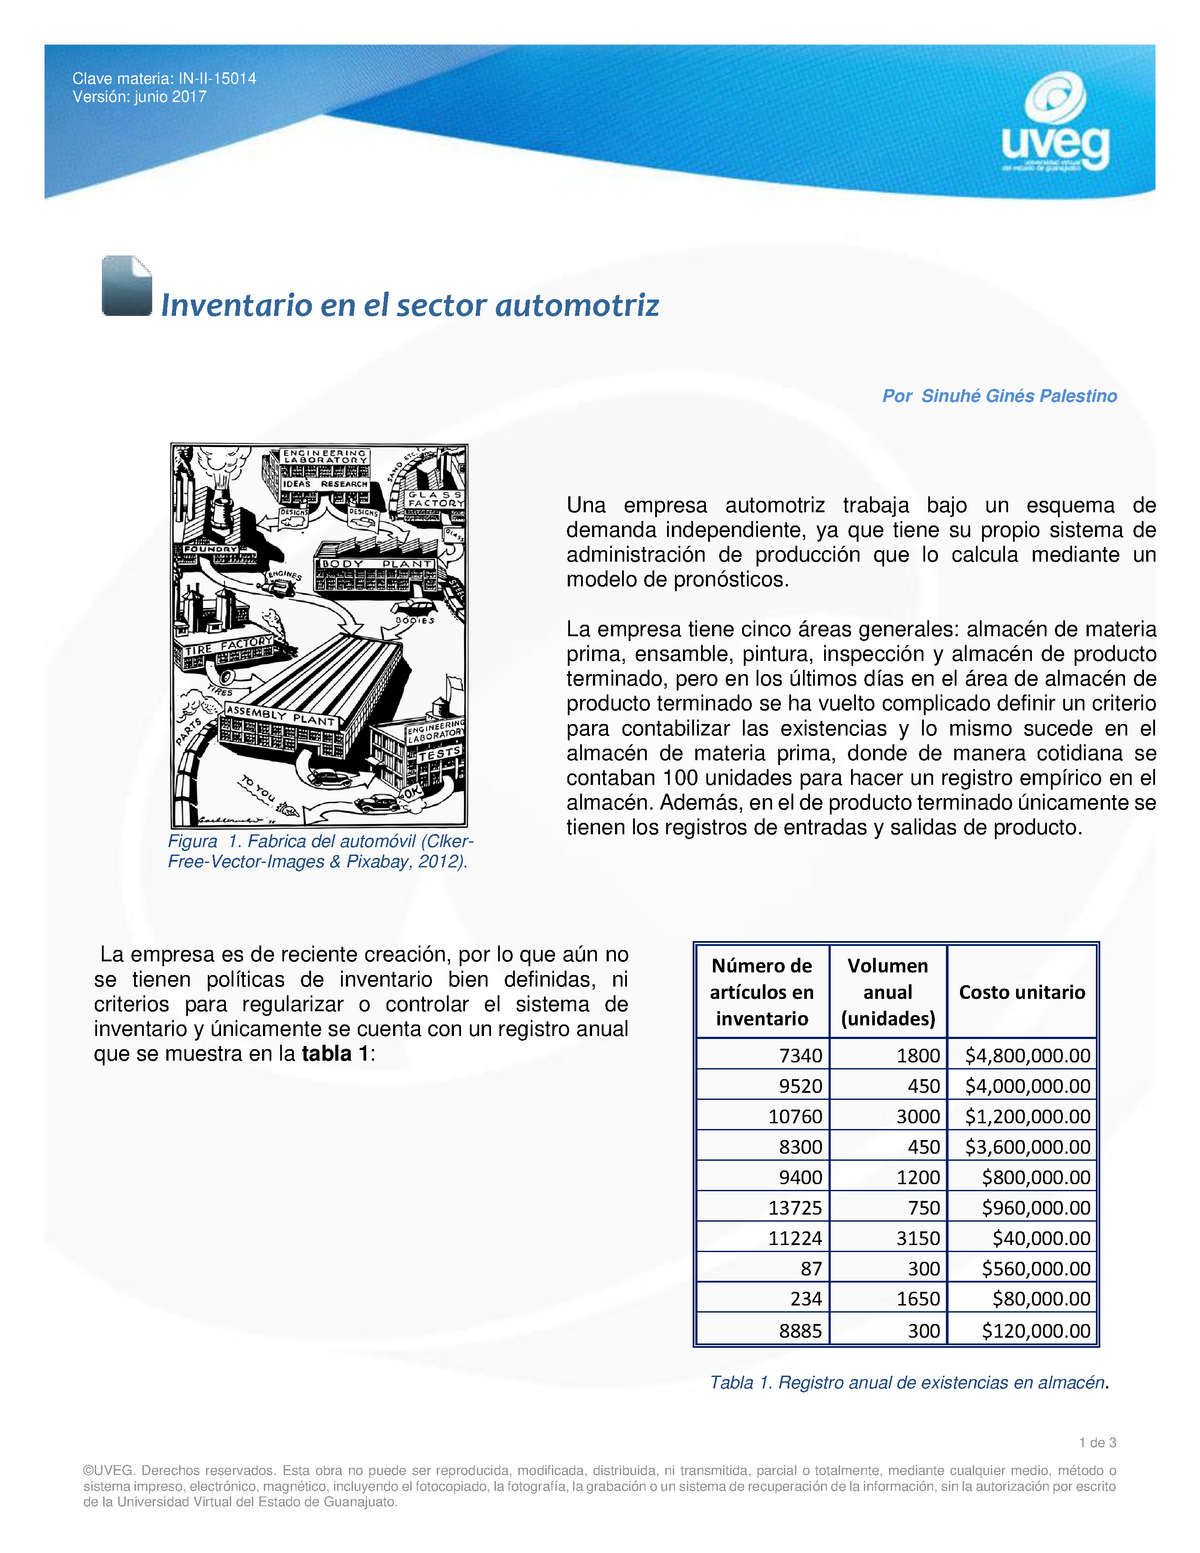 Inventario En El Sector Automotriz Administracion De Inventarios Y Almacenes Clave Materia In 6789